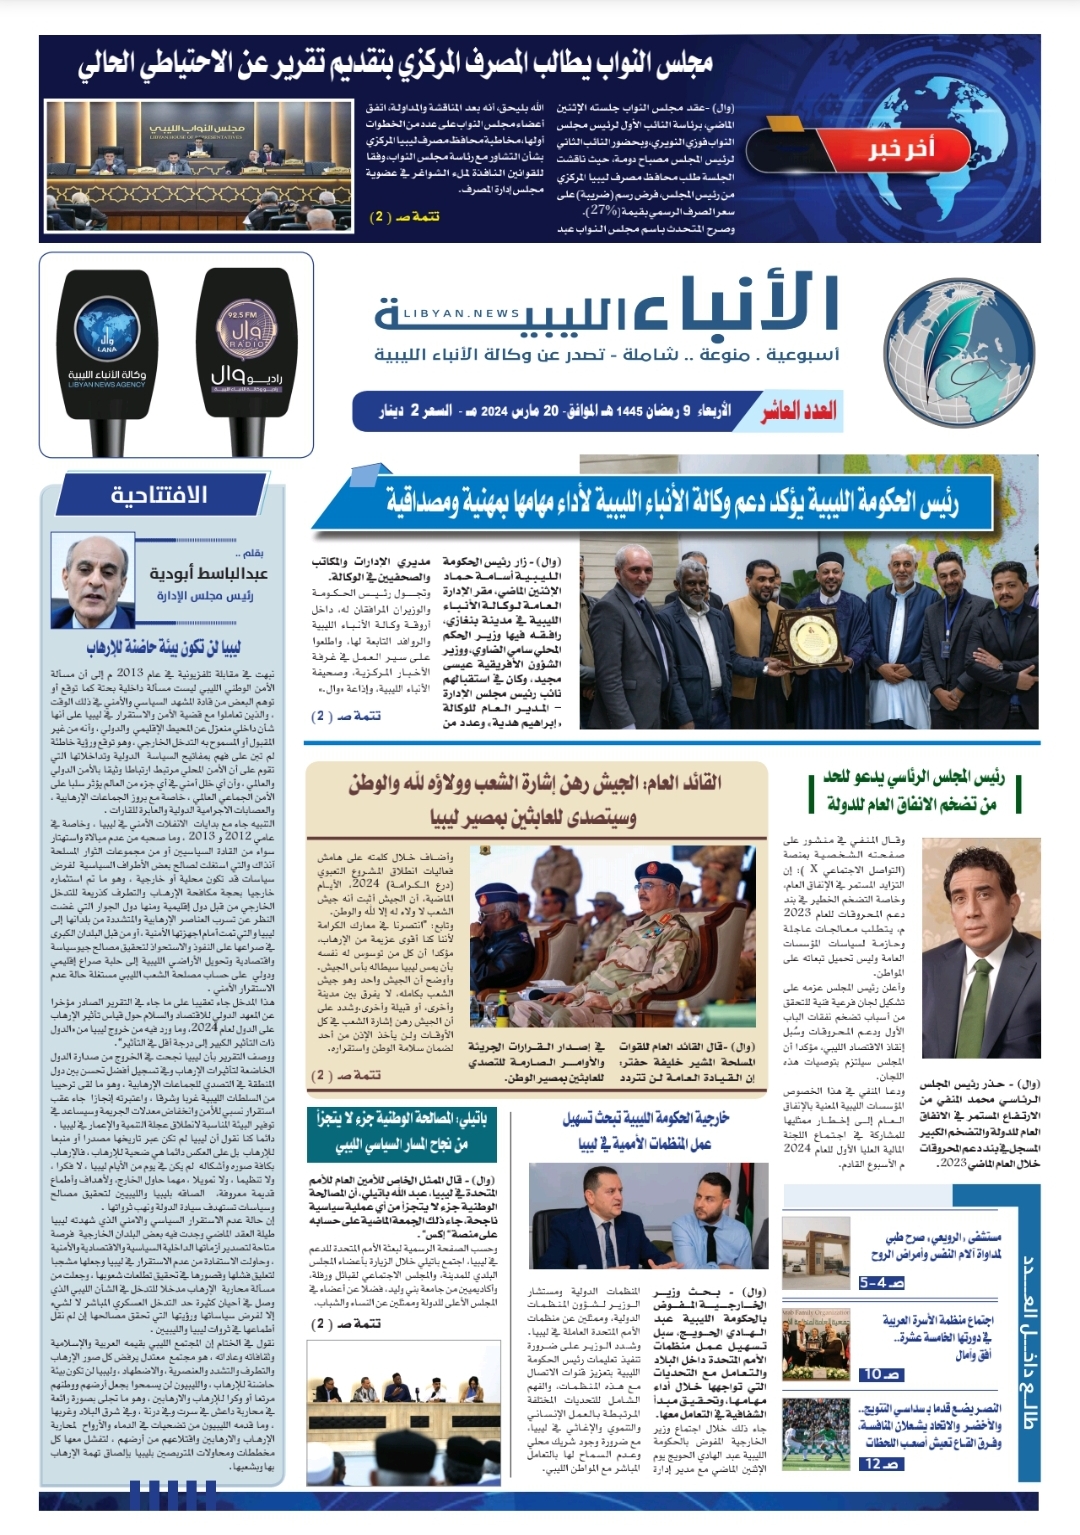 صحيفة الأنباء الليبية (العدد العاشر)